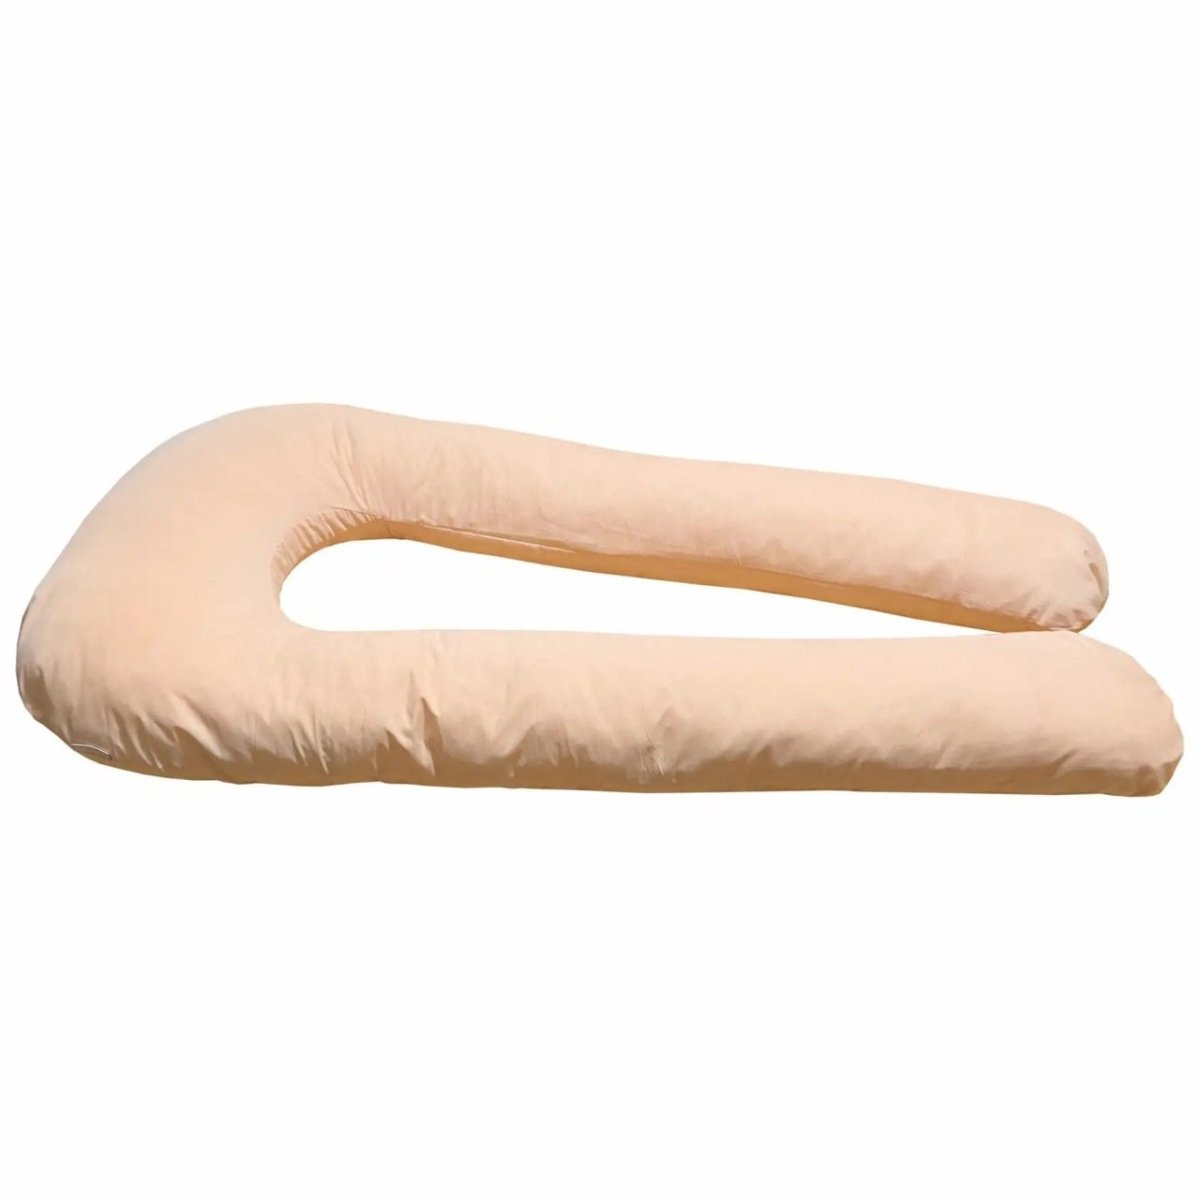 U-образная подушка для беременных светло-персиковая.